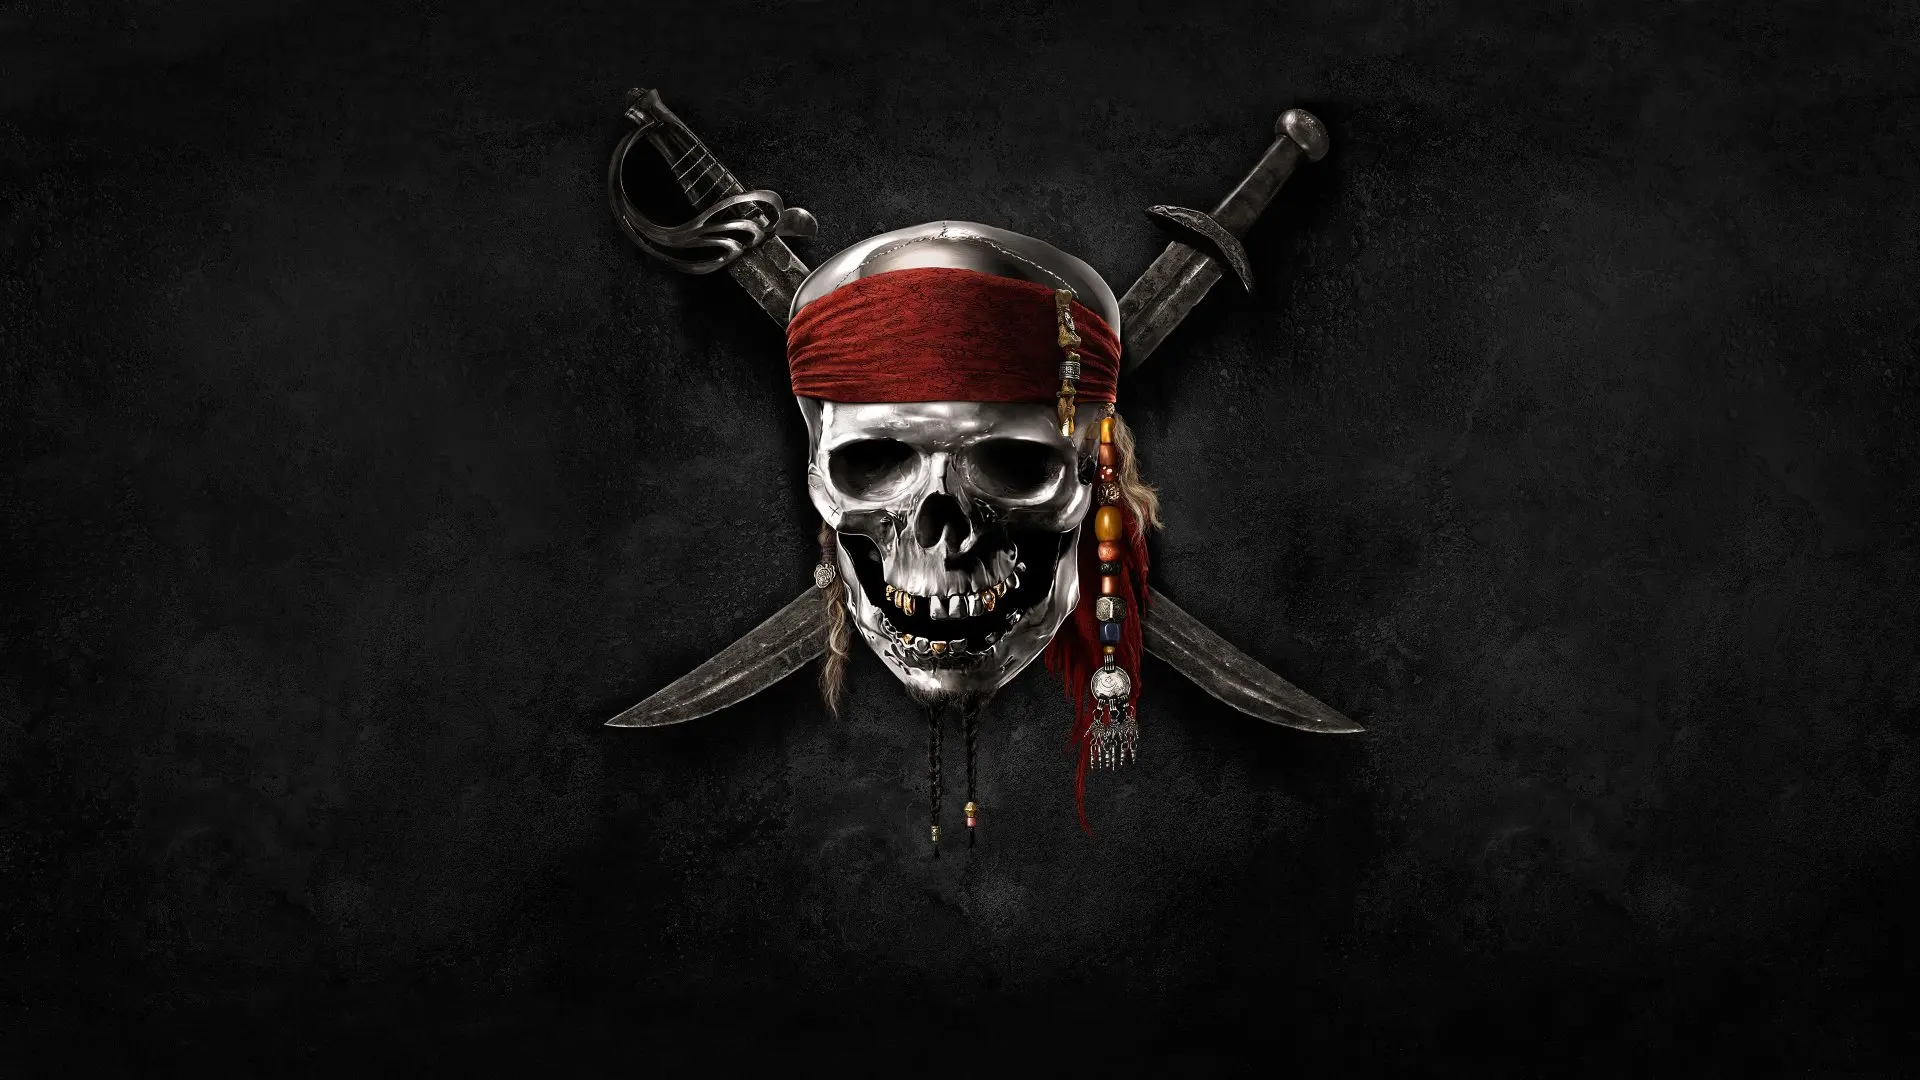 

Фон для фотосъемки с изображением пиратов Карибского моря скелета человека